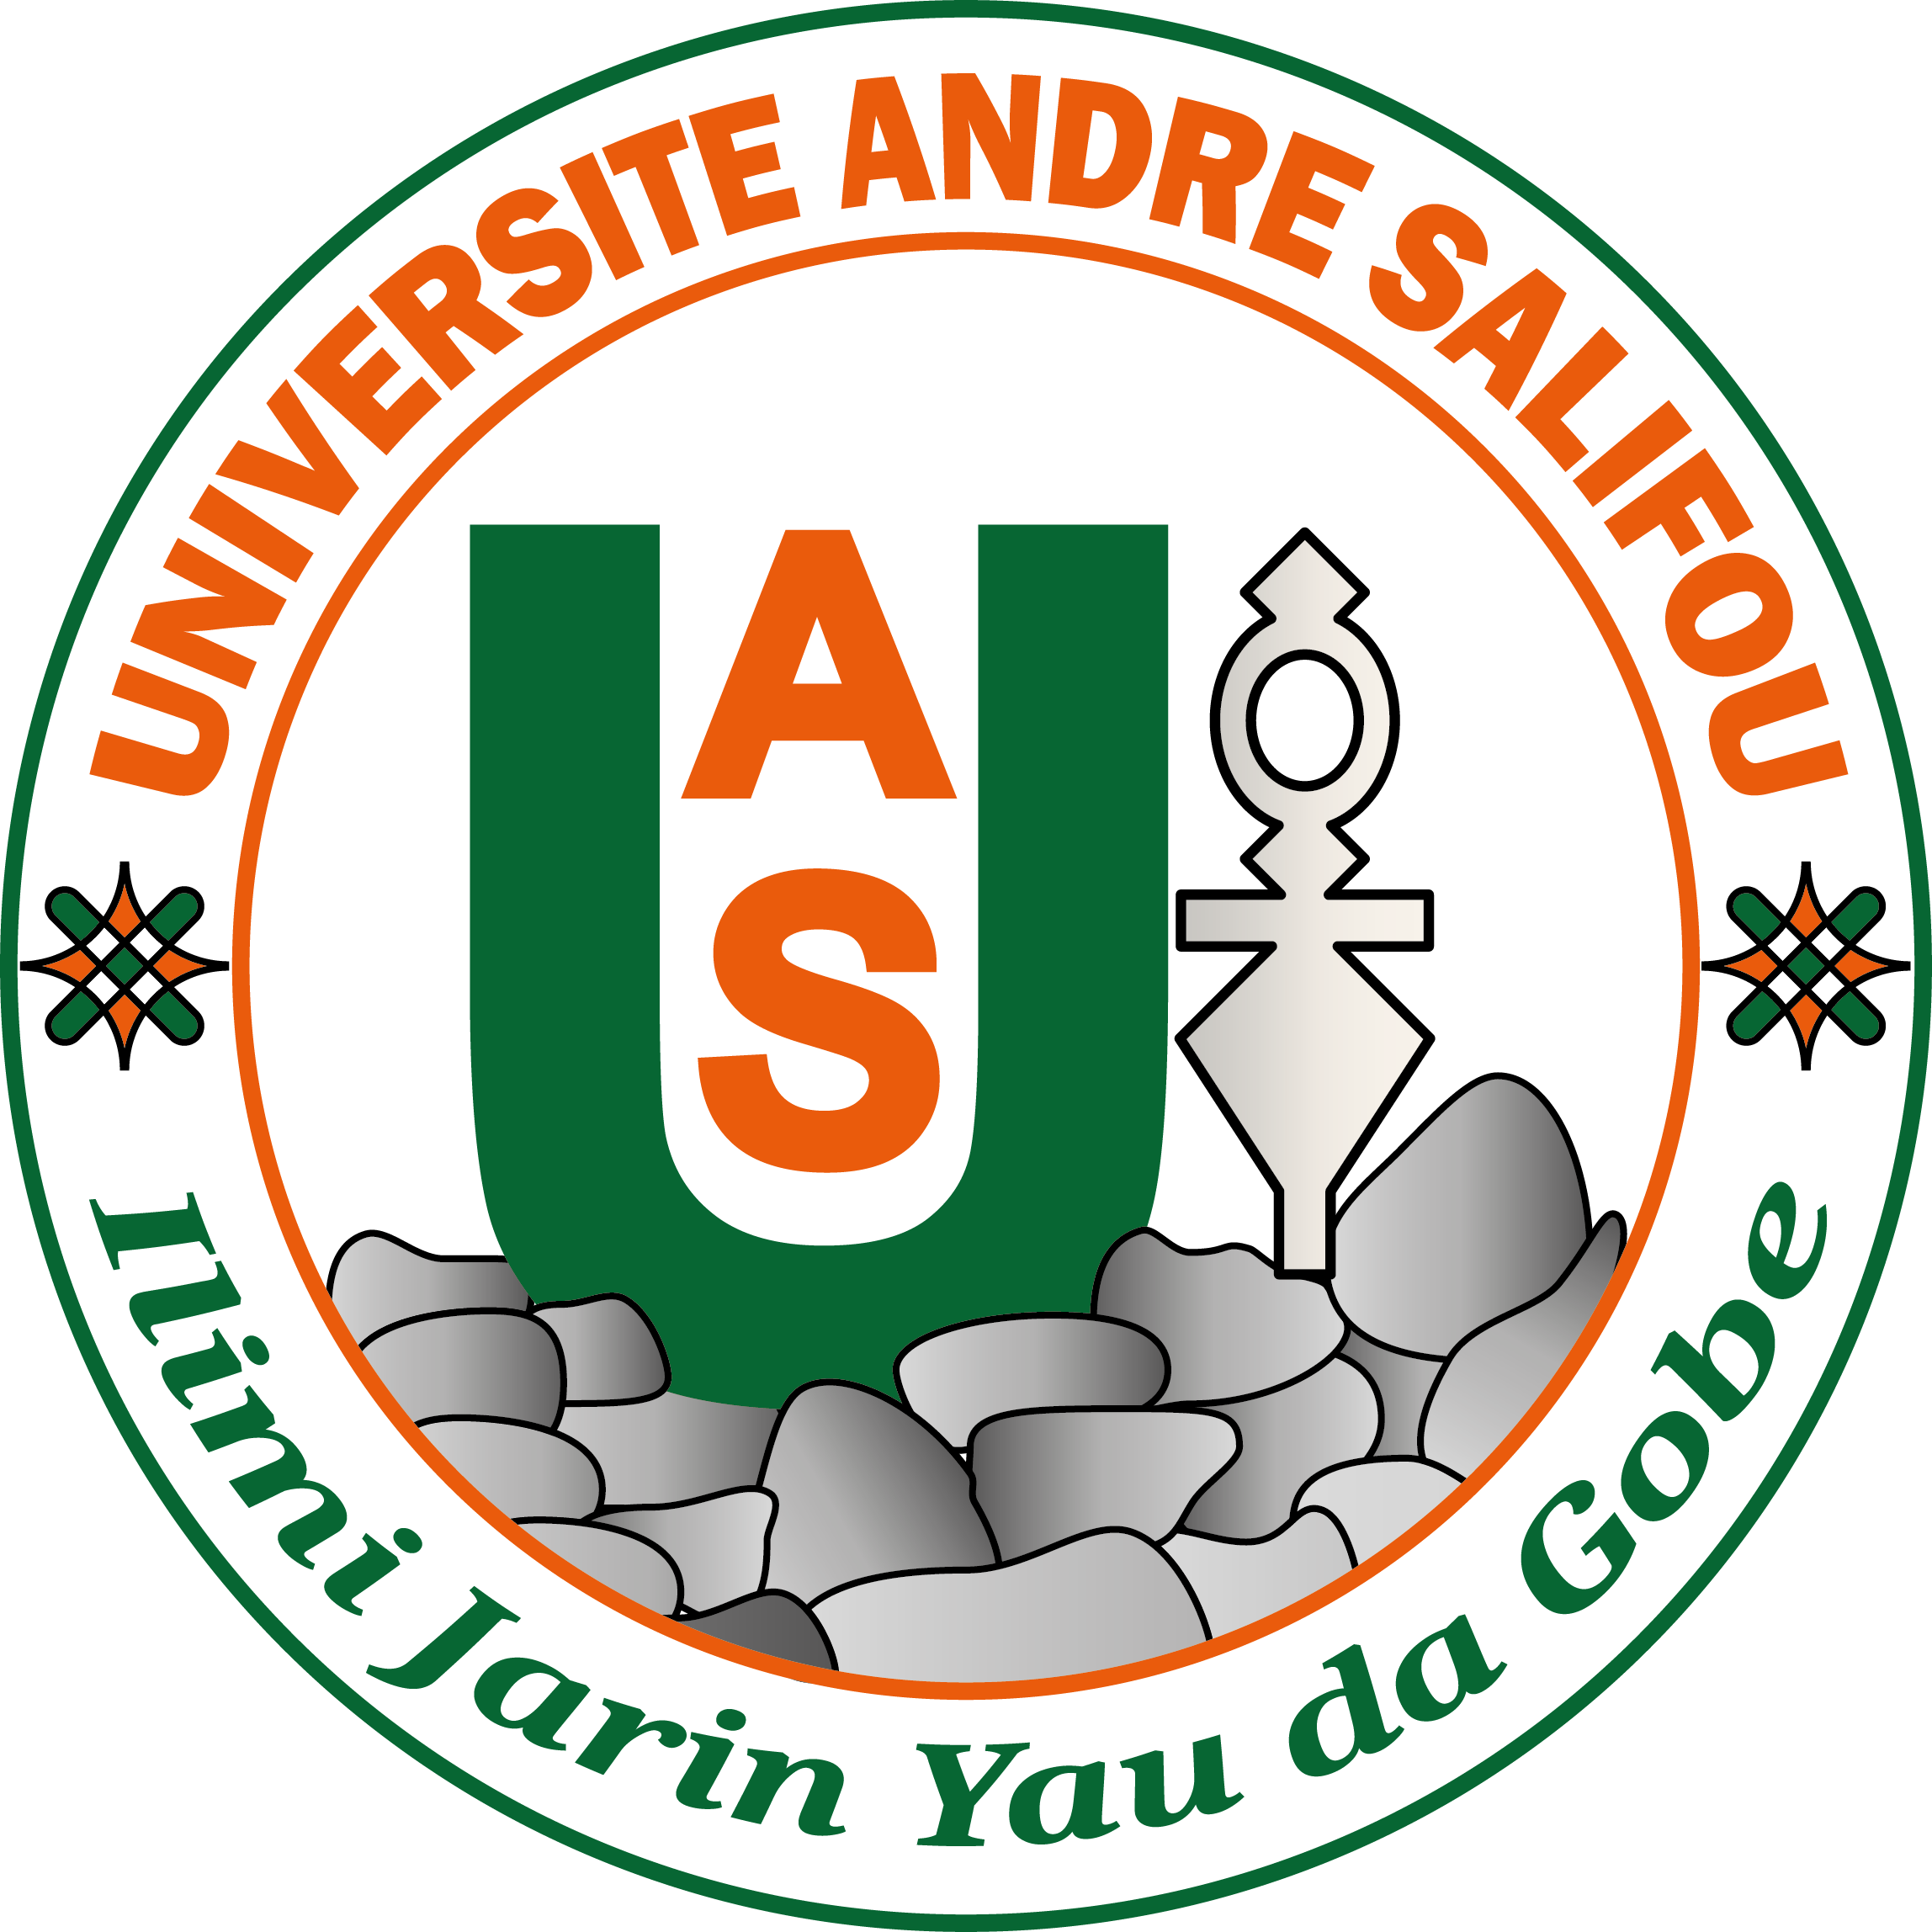 Université André Salifou